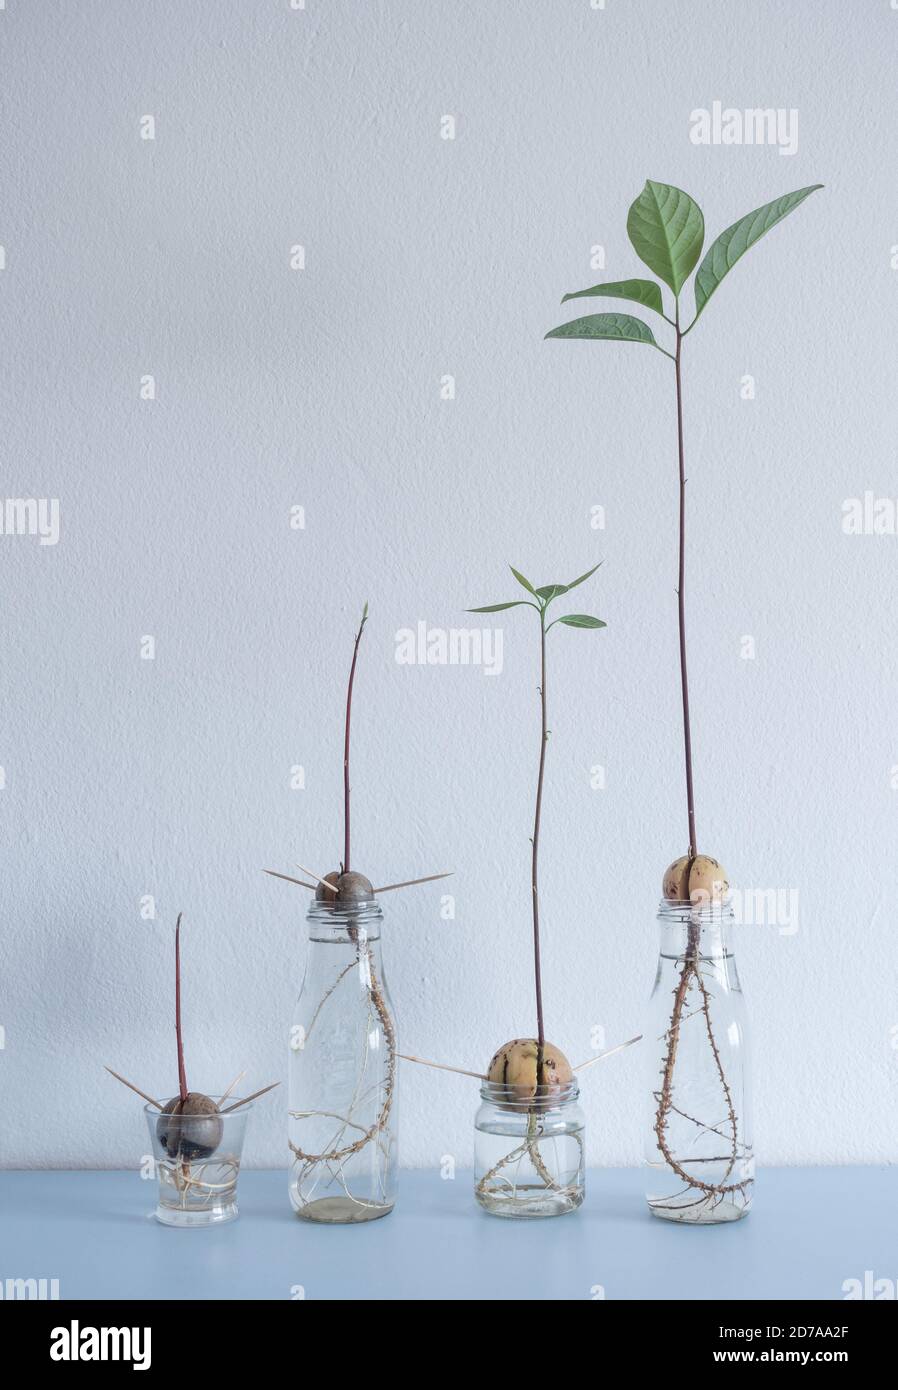 Bild zeigt verschiedene Stufen von Avocado Samen/Steinen, die im Wasser auf dem Heimregal wachsen. Stockfoto